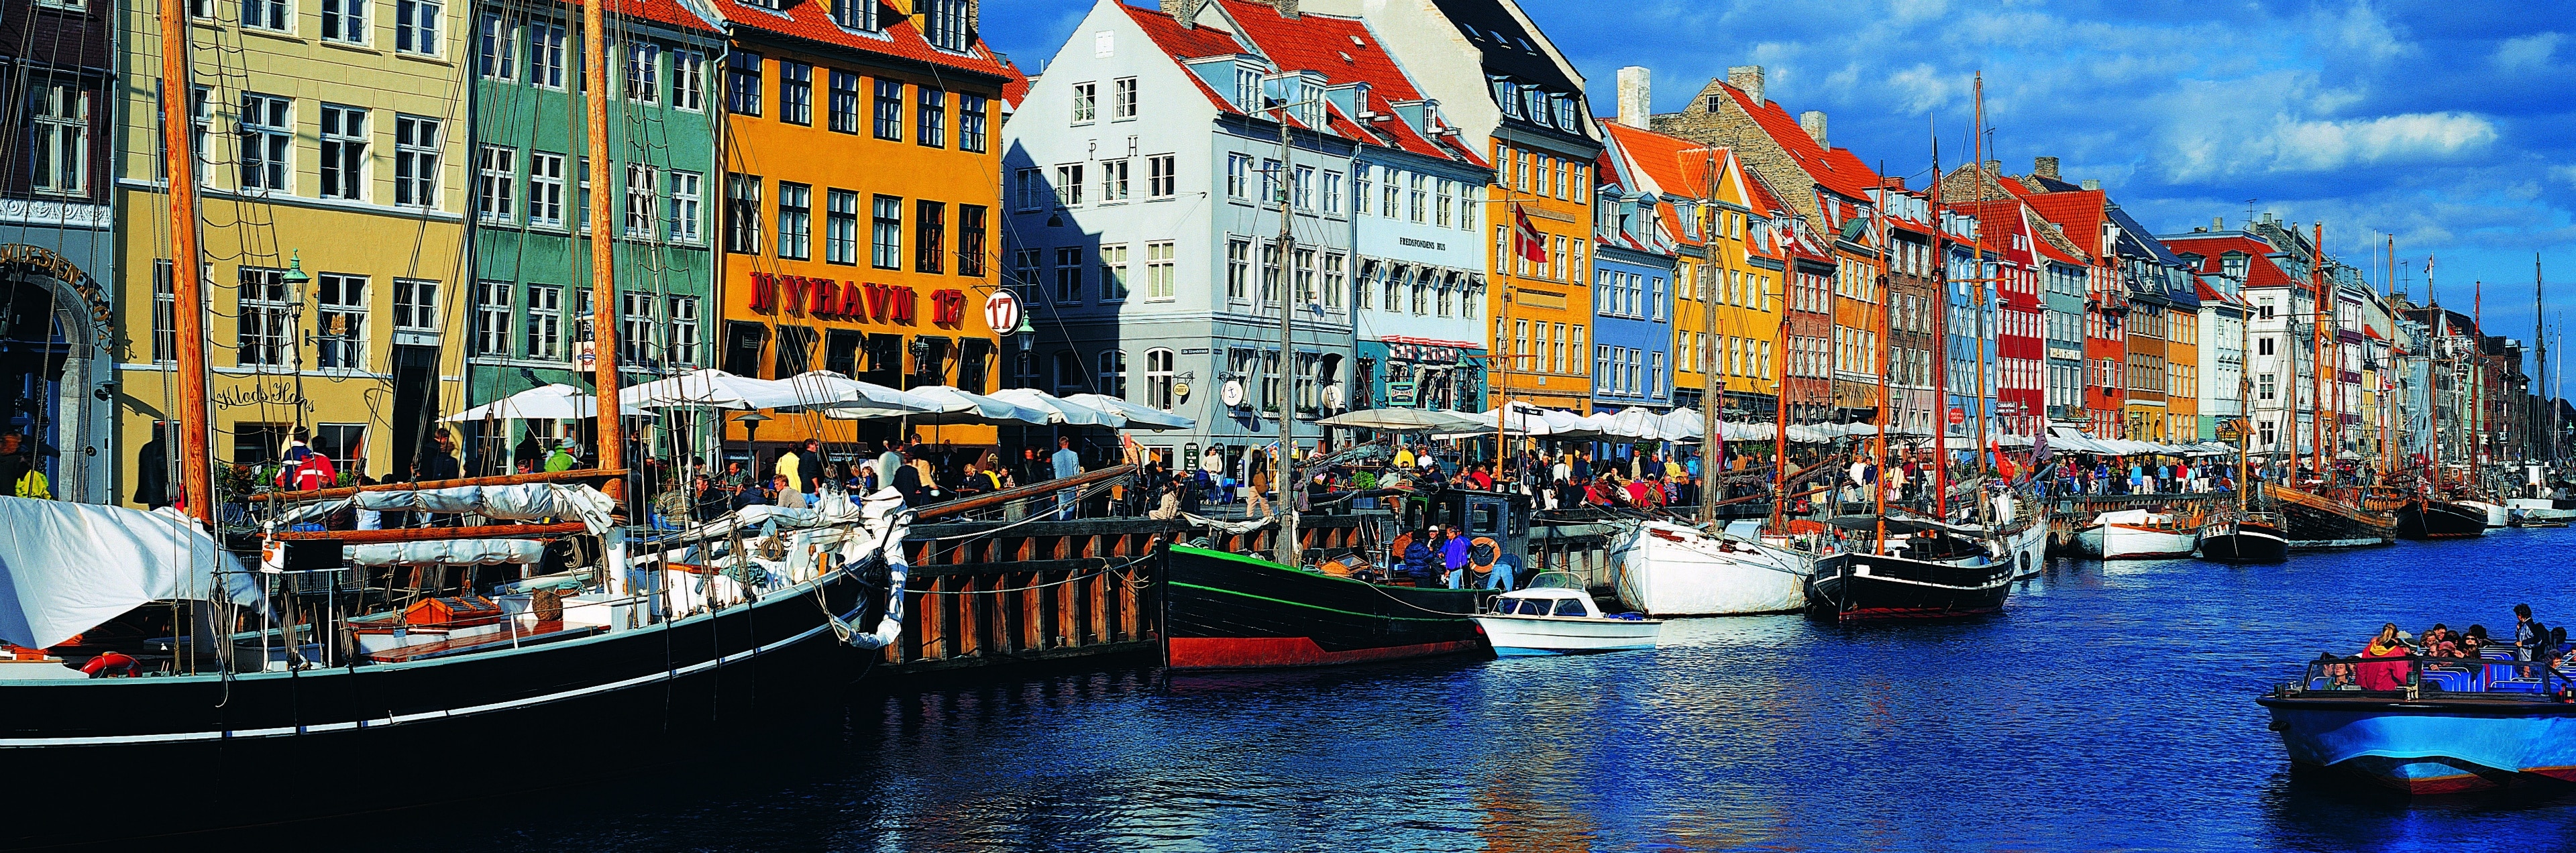 Med de charmerende huse, idylliske sejlbåde, havnen og den livlige atmosfære er Nyhavn det oplagte sted at tage sig en pause og få et godt måltid eller en kold øl.